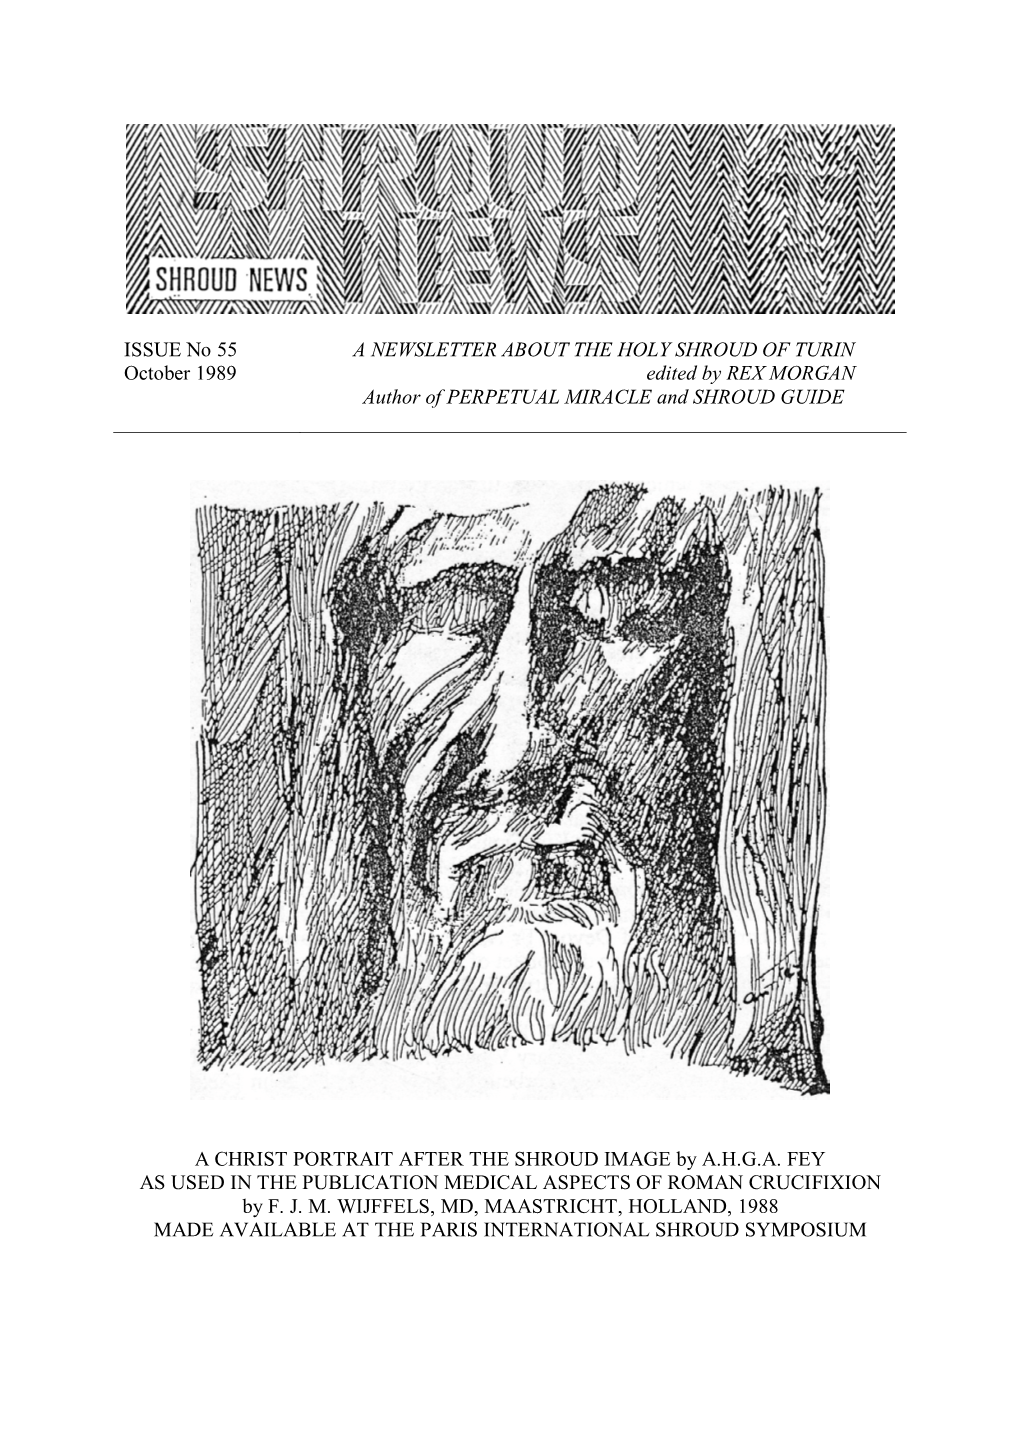 Shroud News Issue #55 October 1989